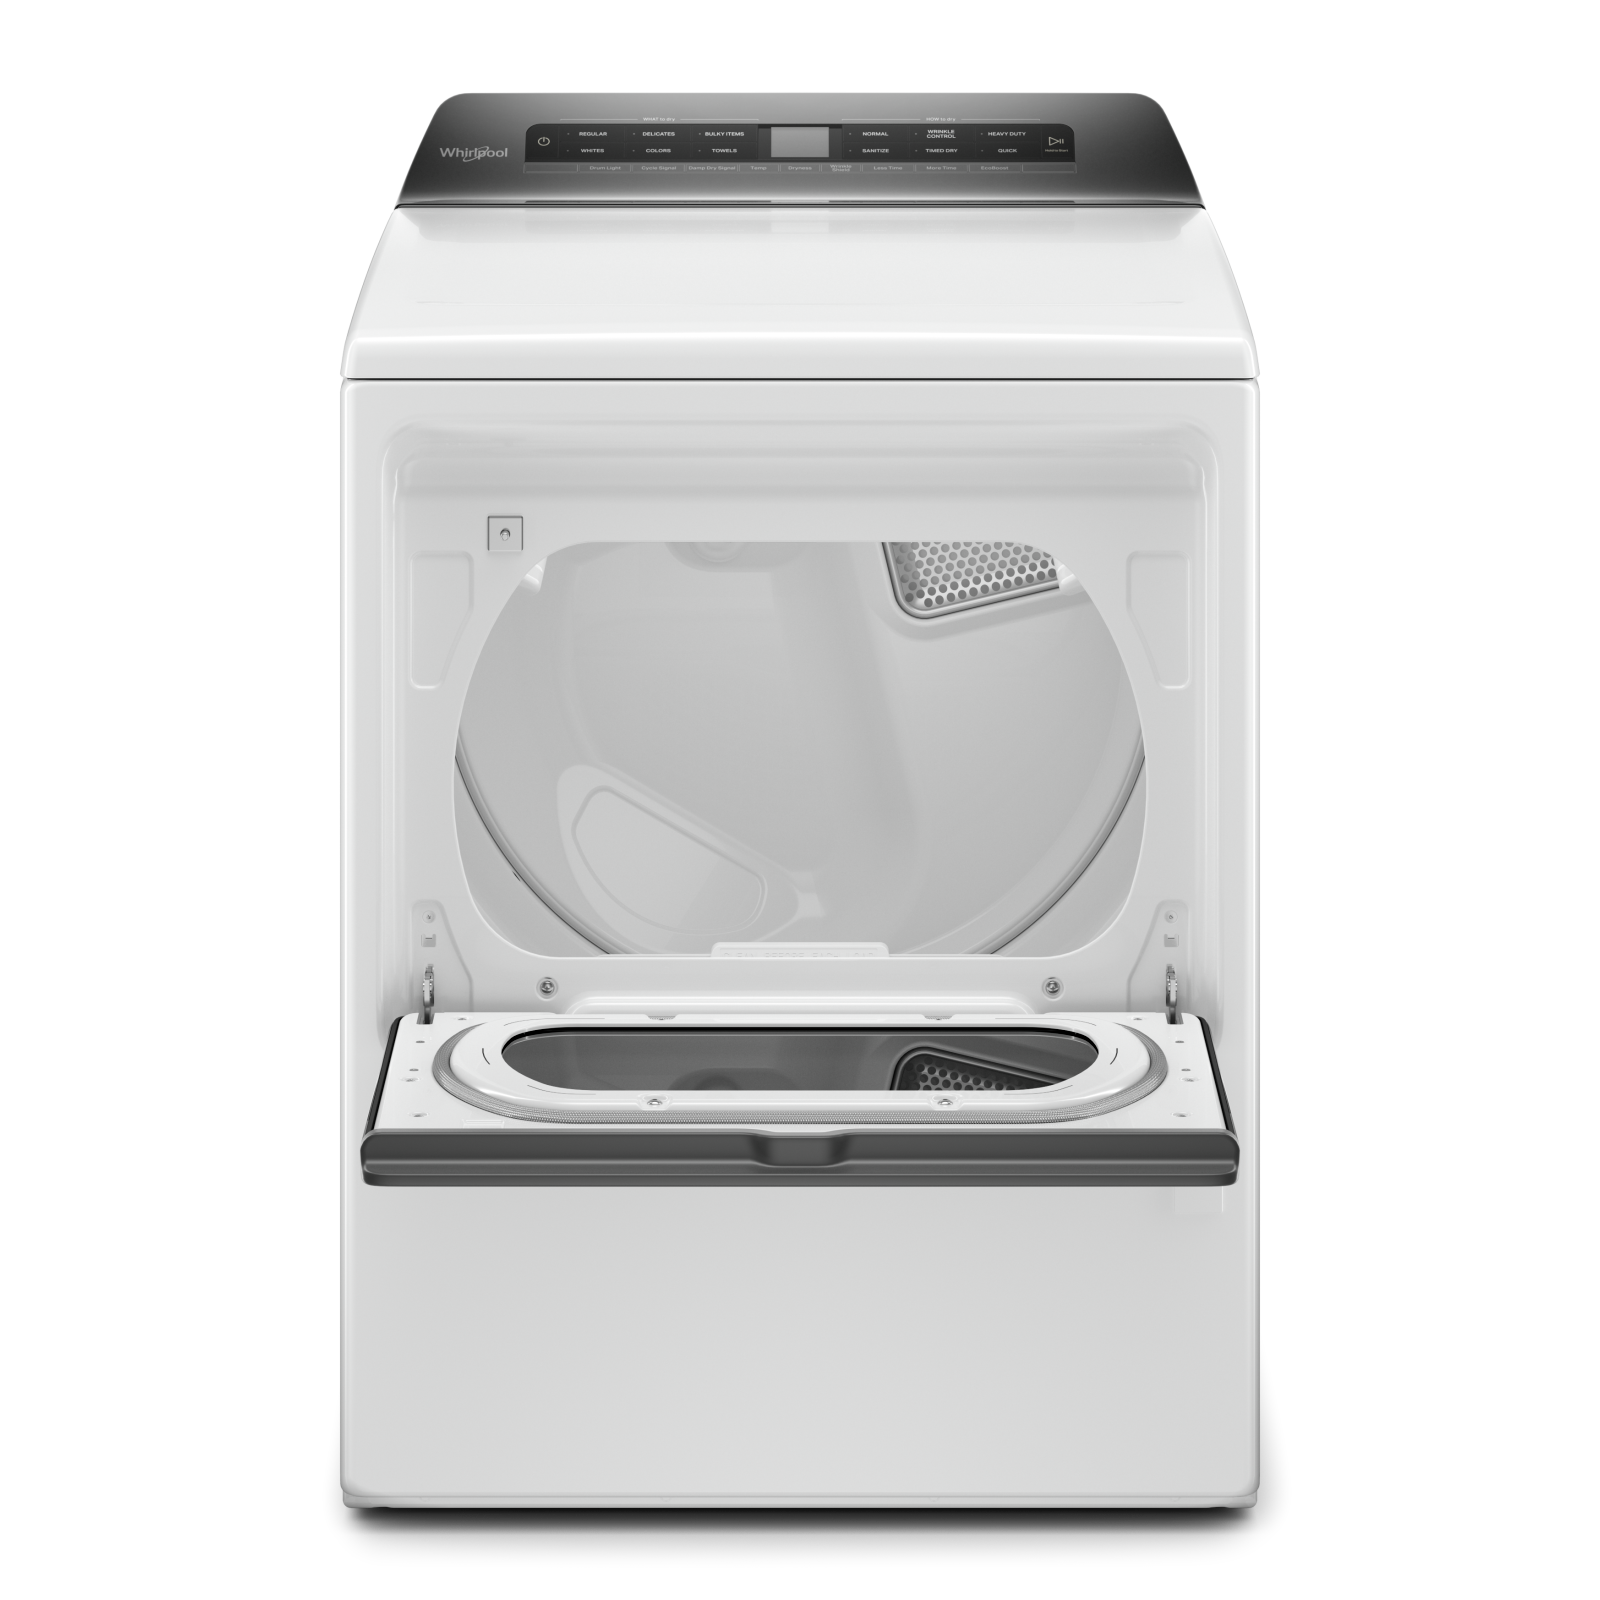 Whirlpool - 7.4 cu. Ft  Gas Dryer in White - WGD5100HW